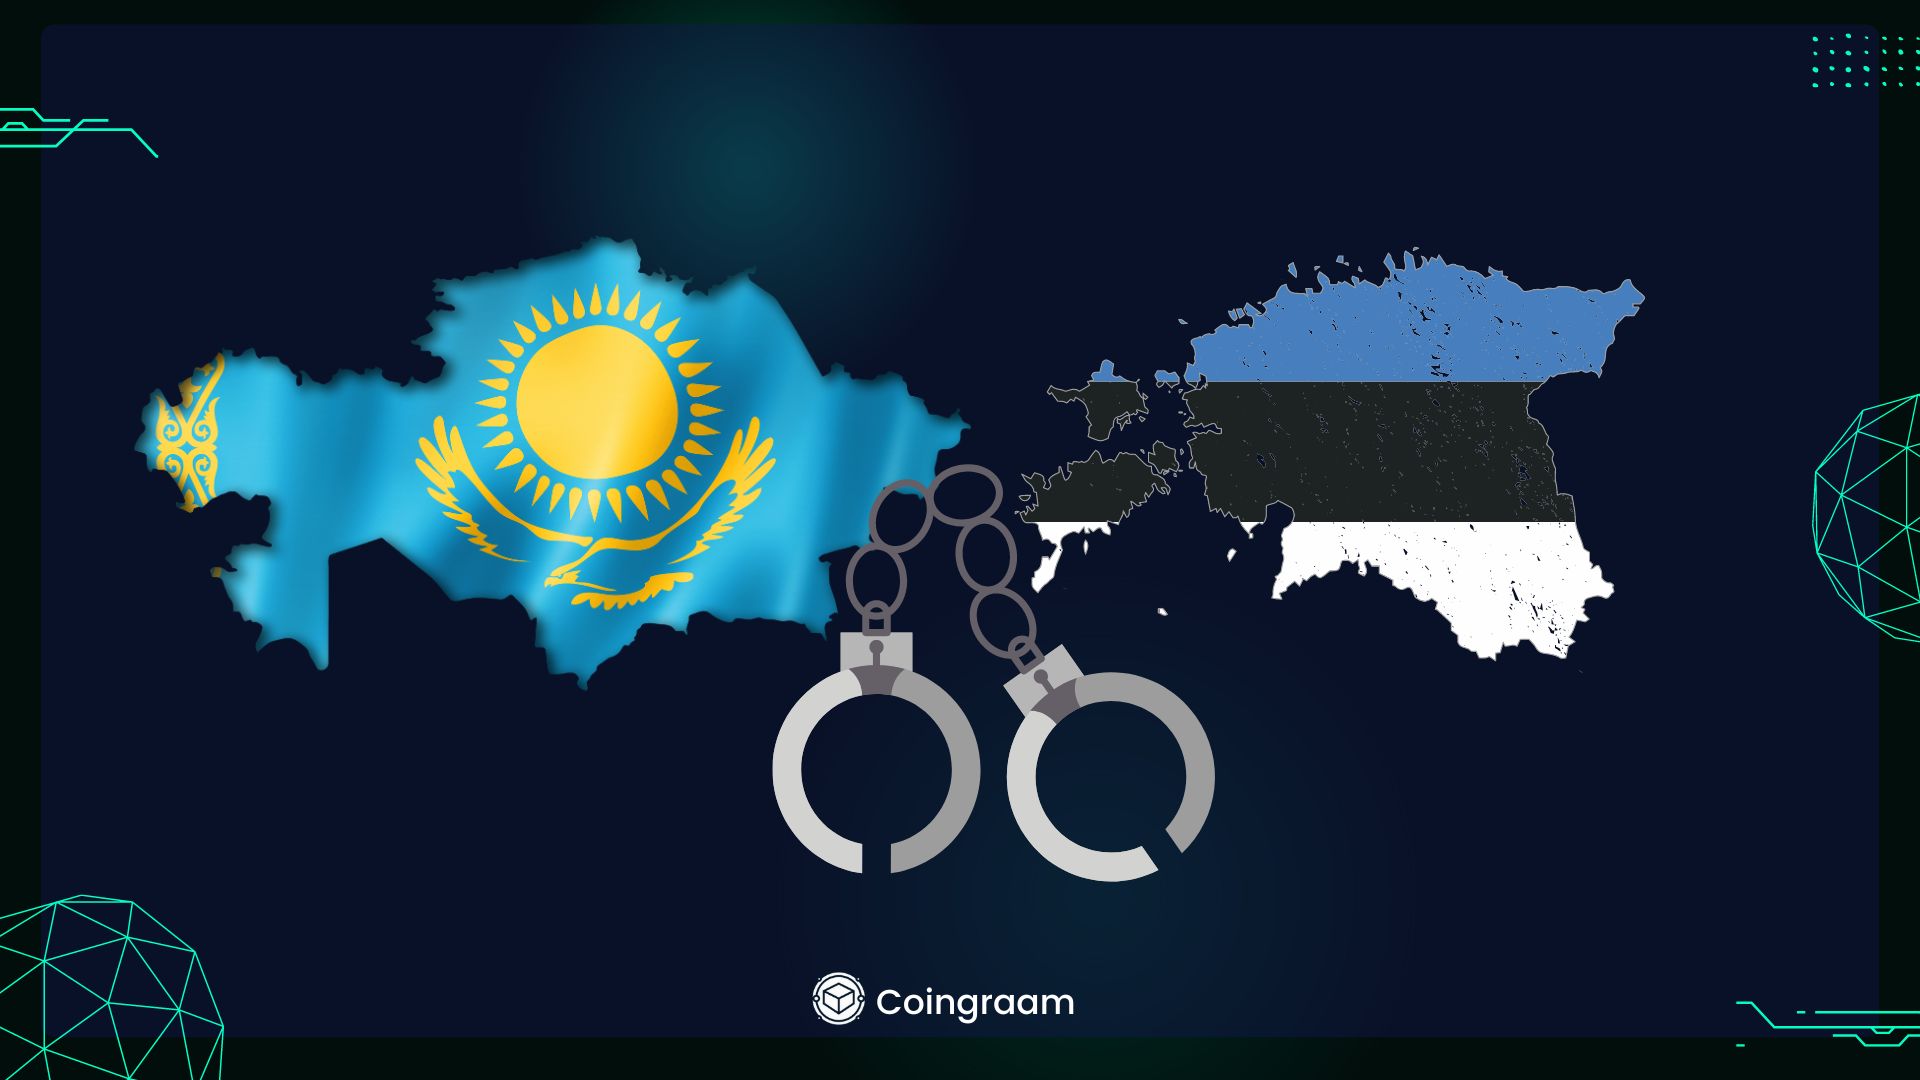 پلیس استونی و قزاقستان درباره هک کیف پول اتمیک تحقیق می کنند

